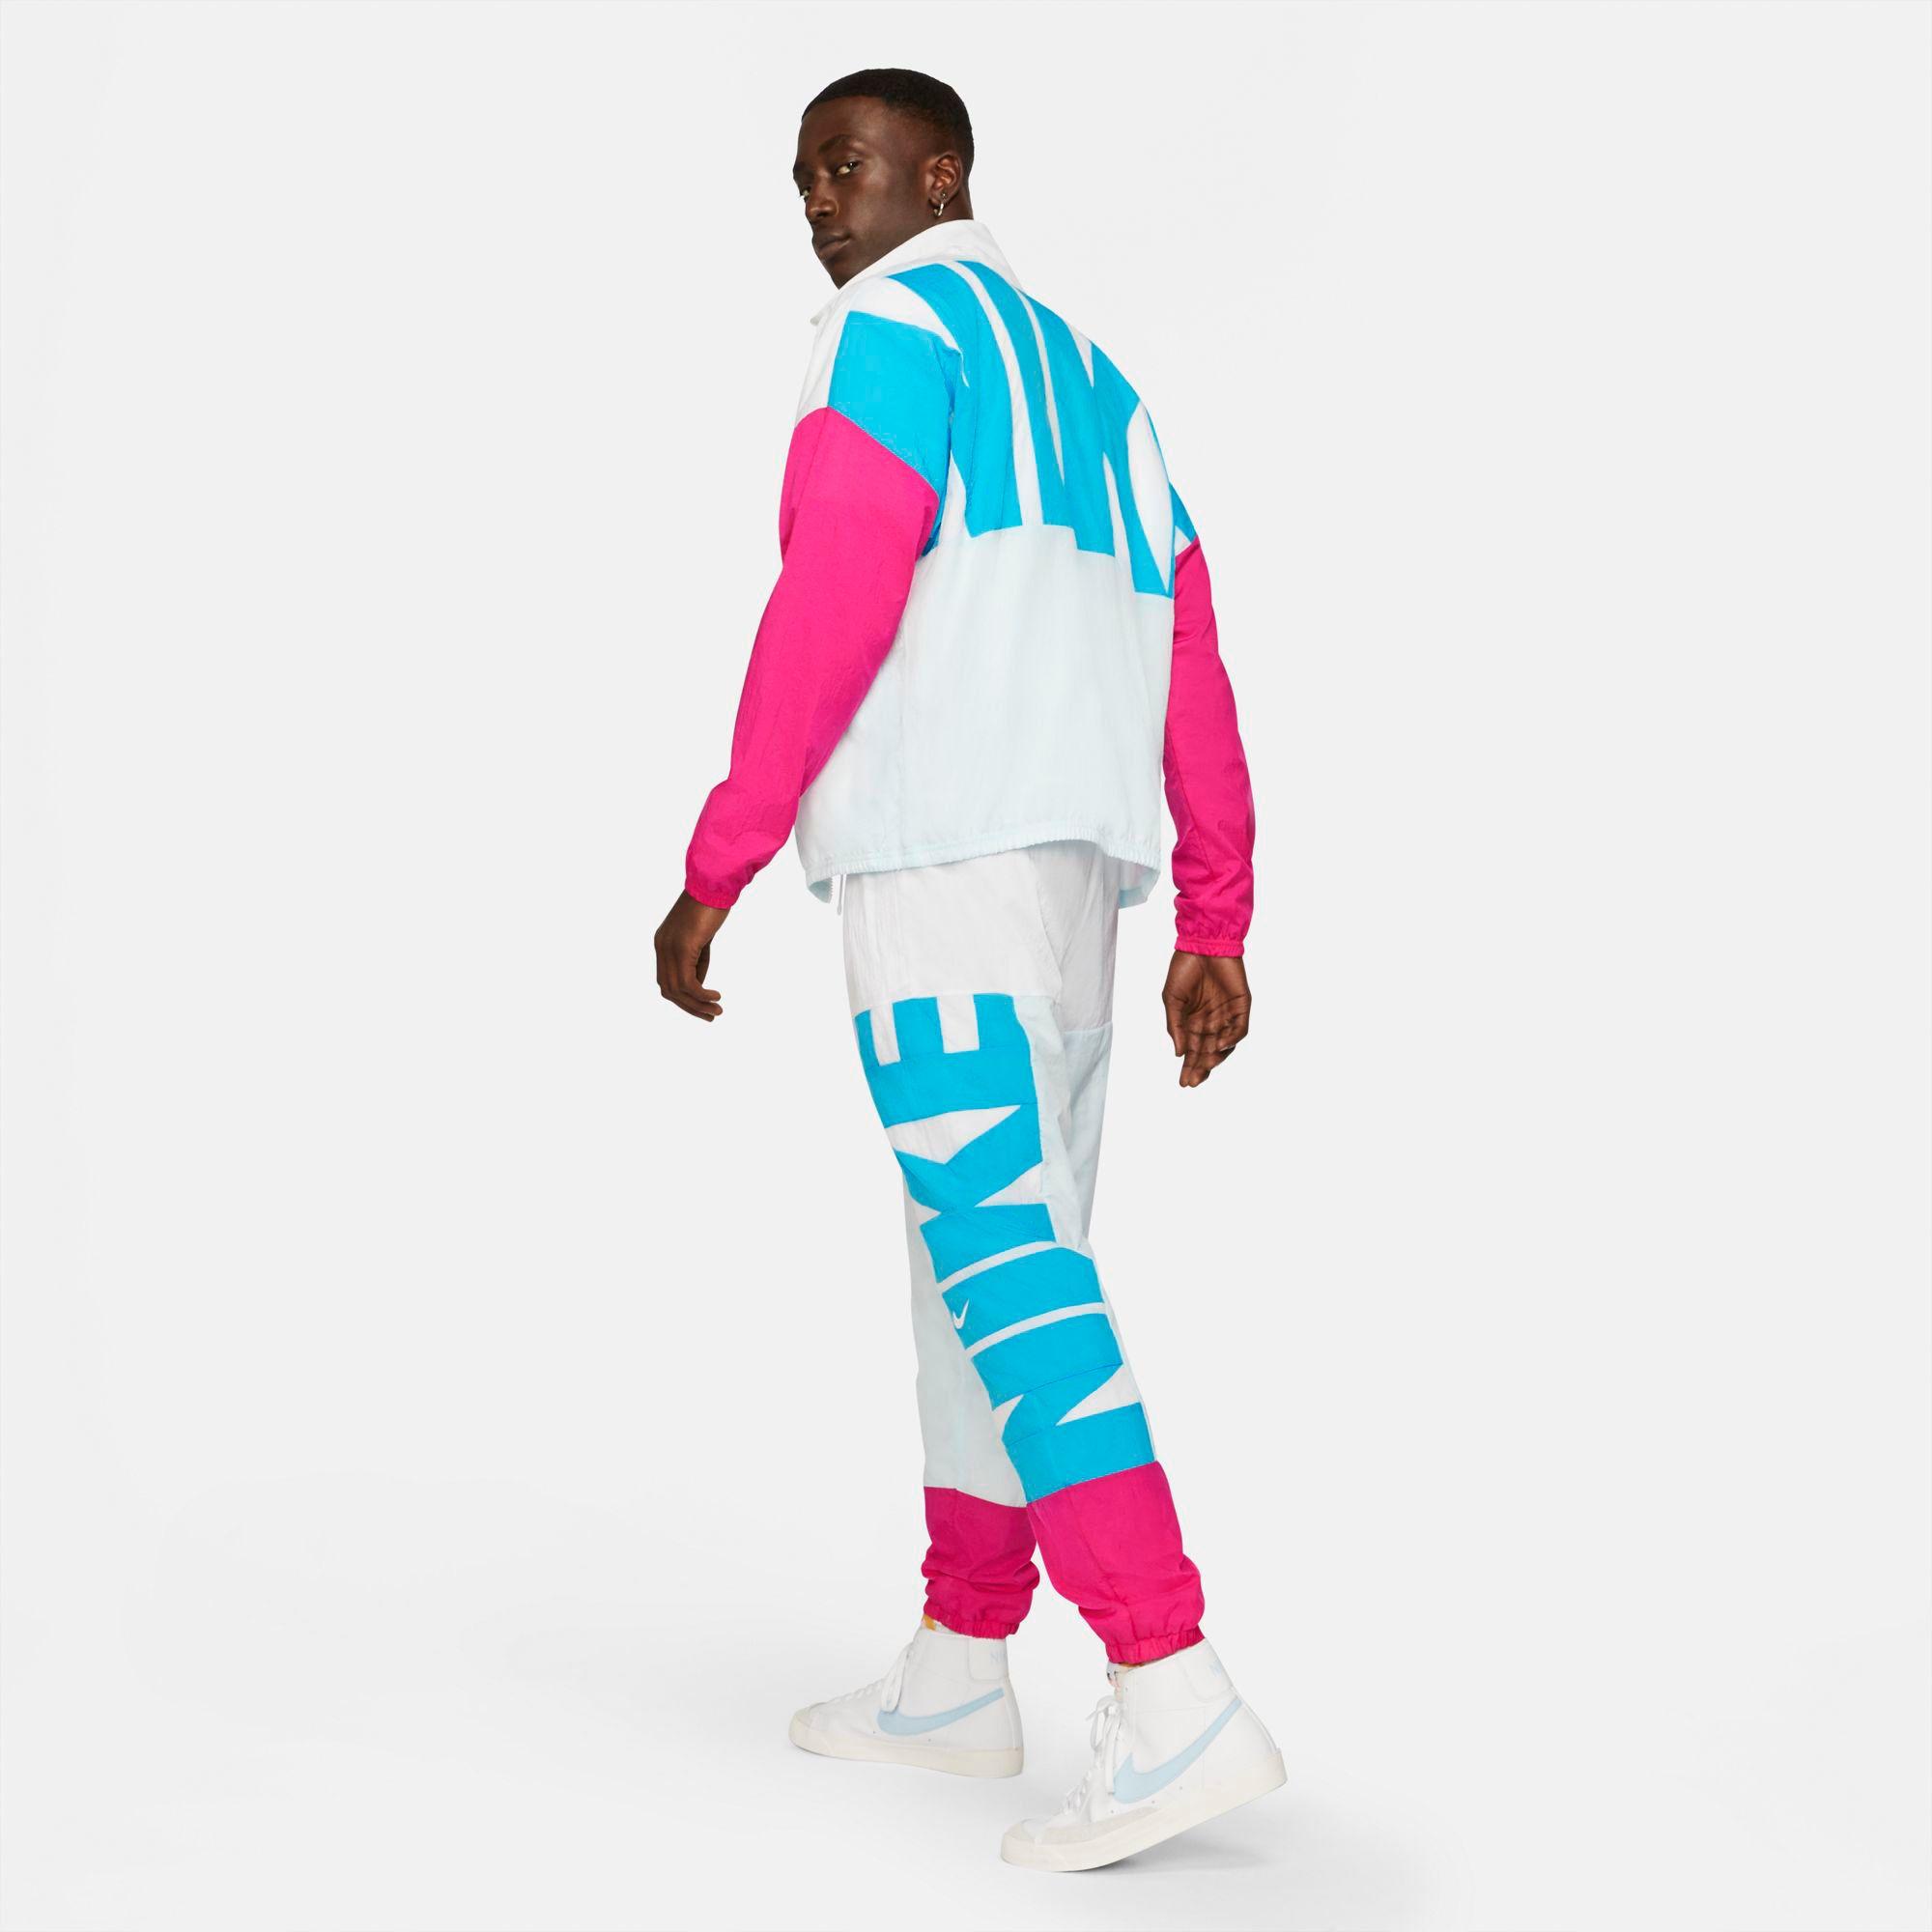 Nike Starting 5 Full Zip Basketball Jacket for Men - Lyst